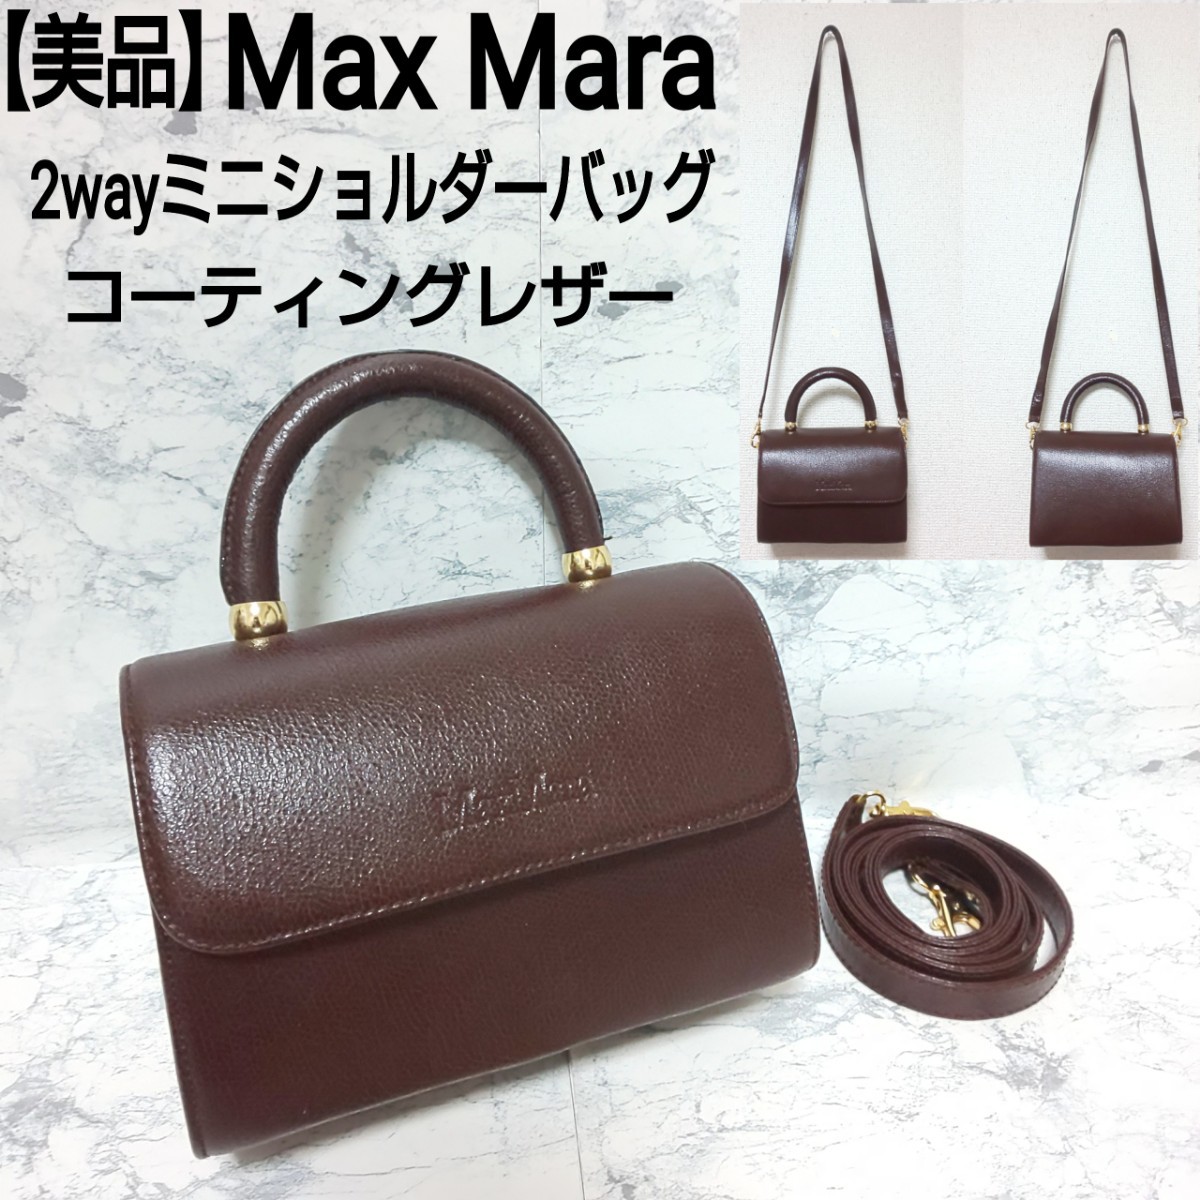 【美品】Max Mara マックスマーラ 2wayミニショルダーバッグ ハンドバッグ グレインレザー ダークブラウン 焦茶 レディース